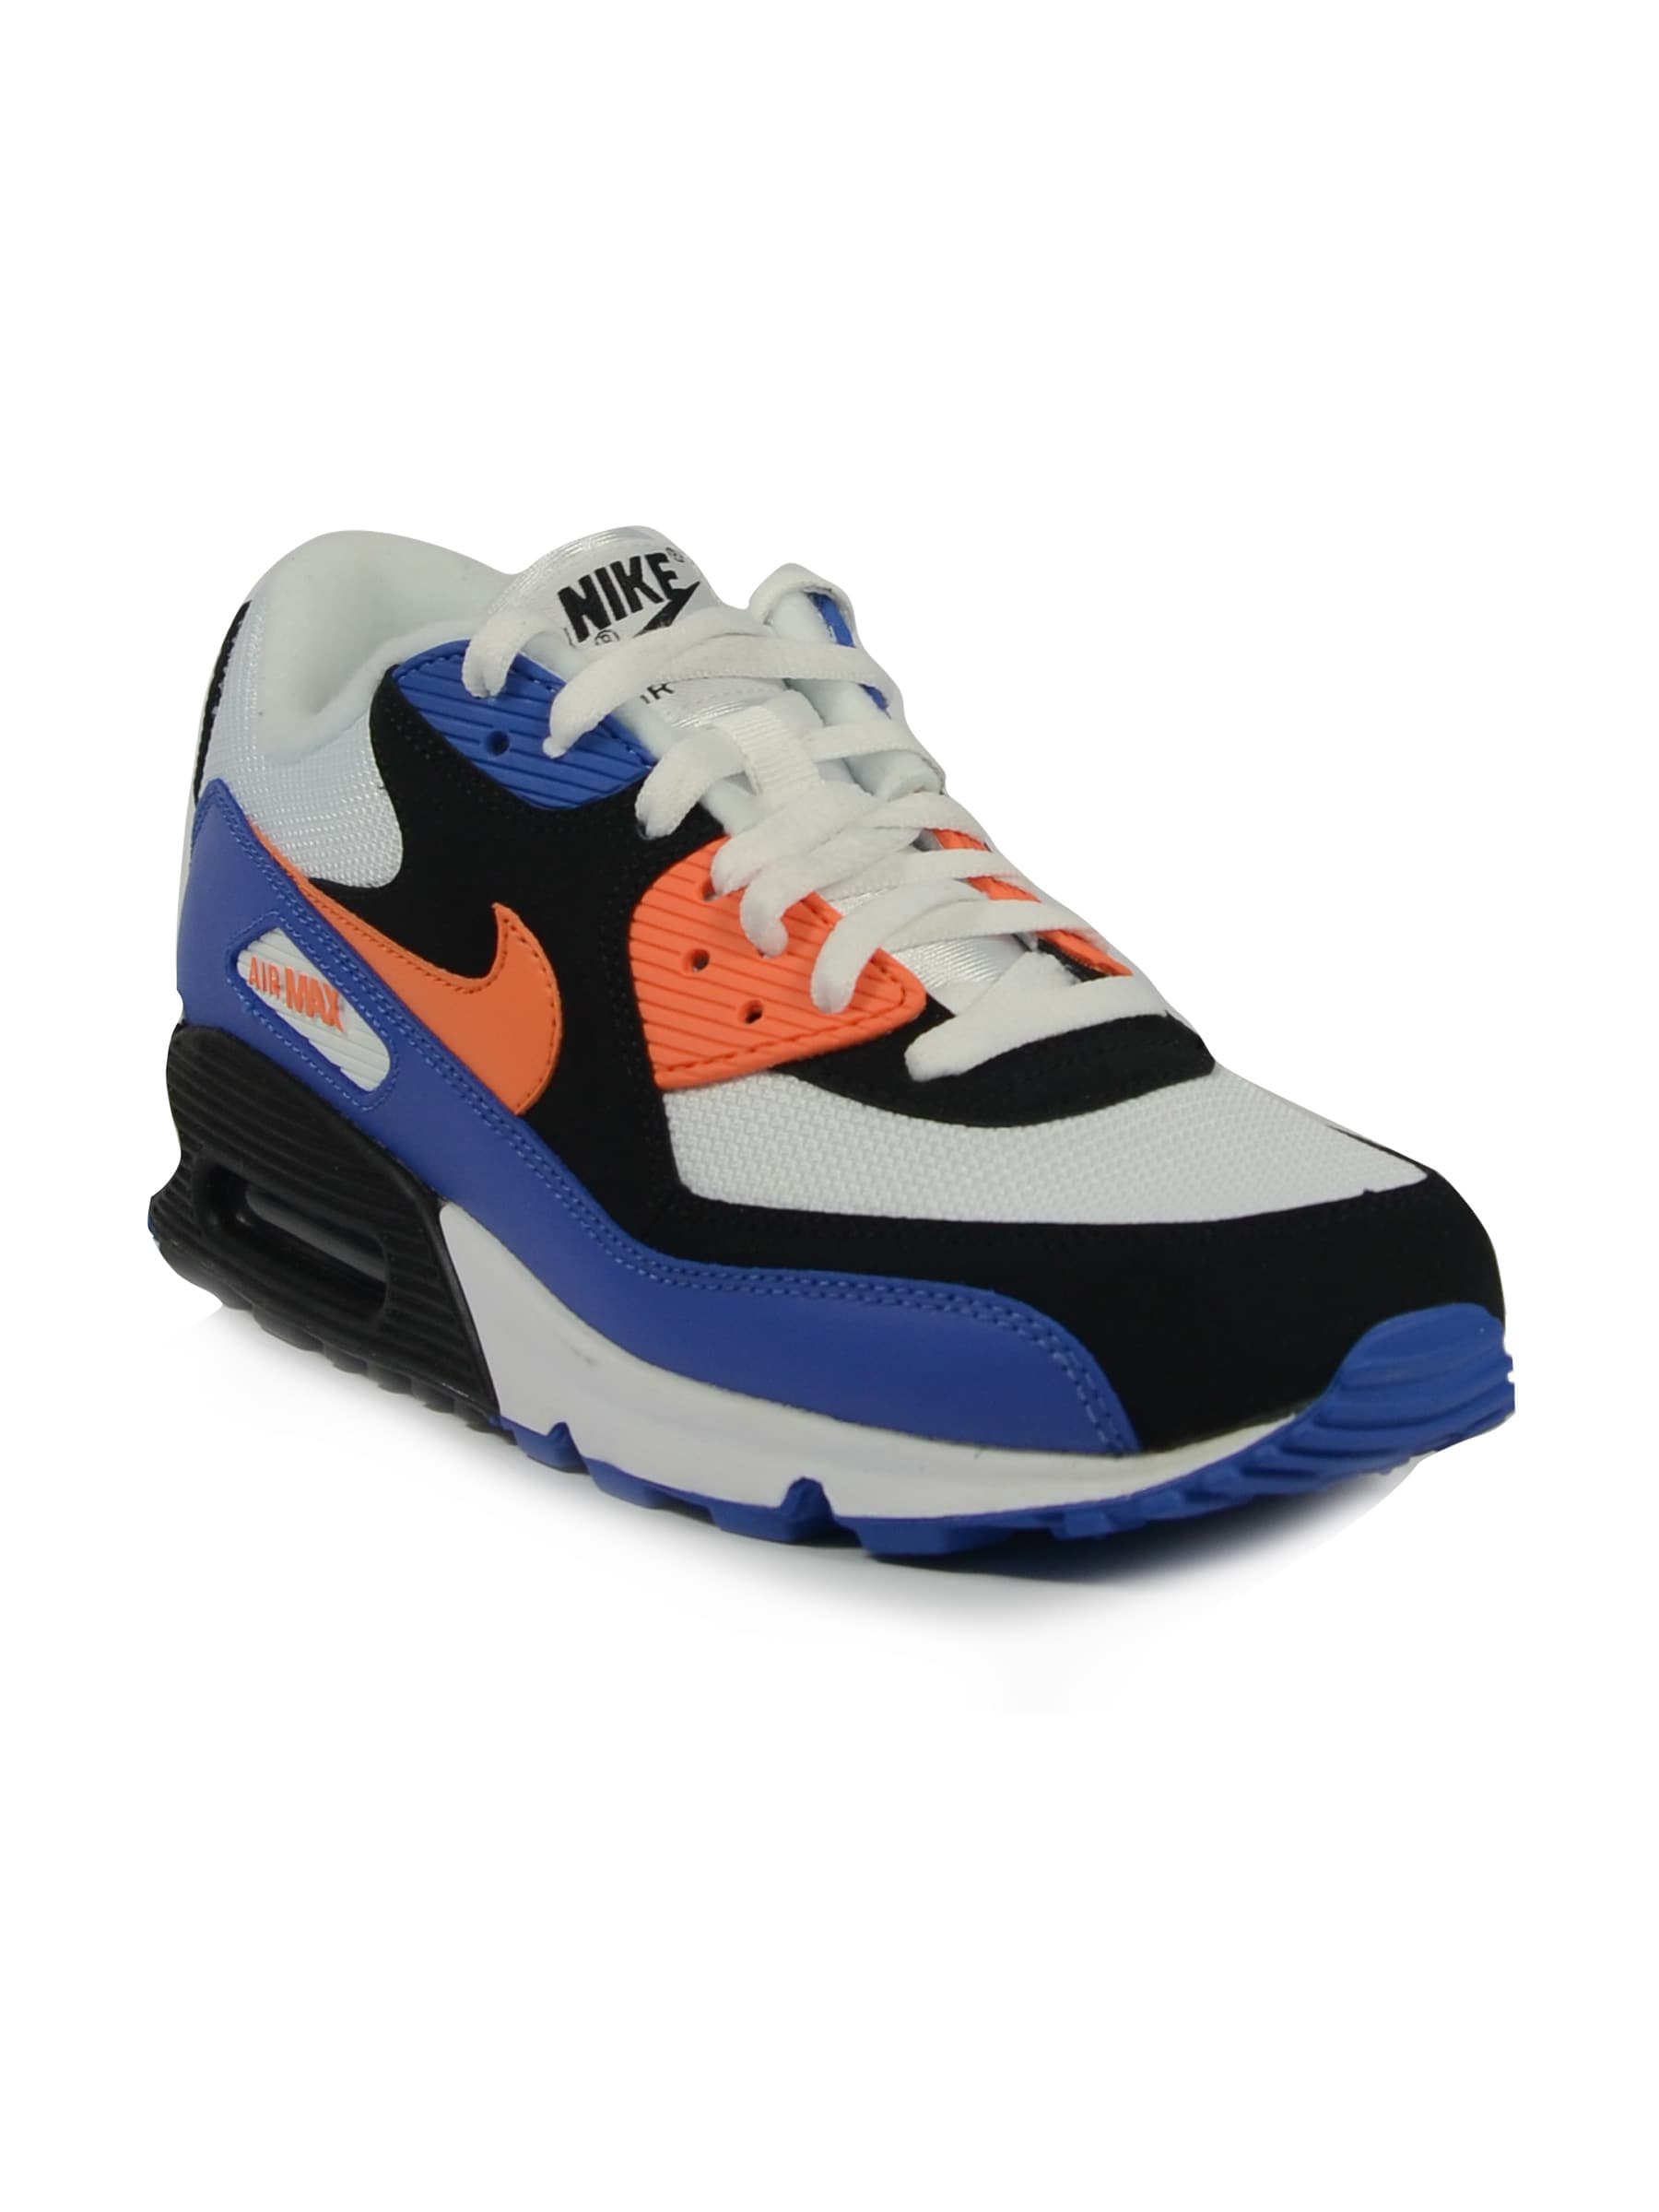 Nike Men's Air Max 90 Dark Blue Shoe